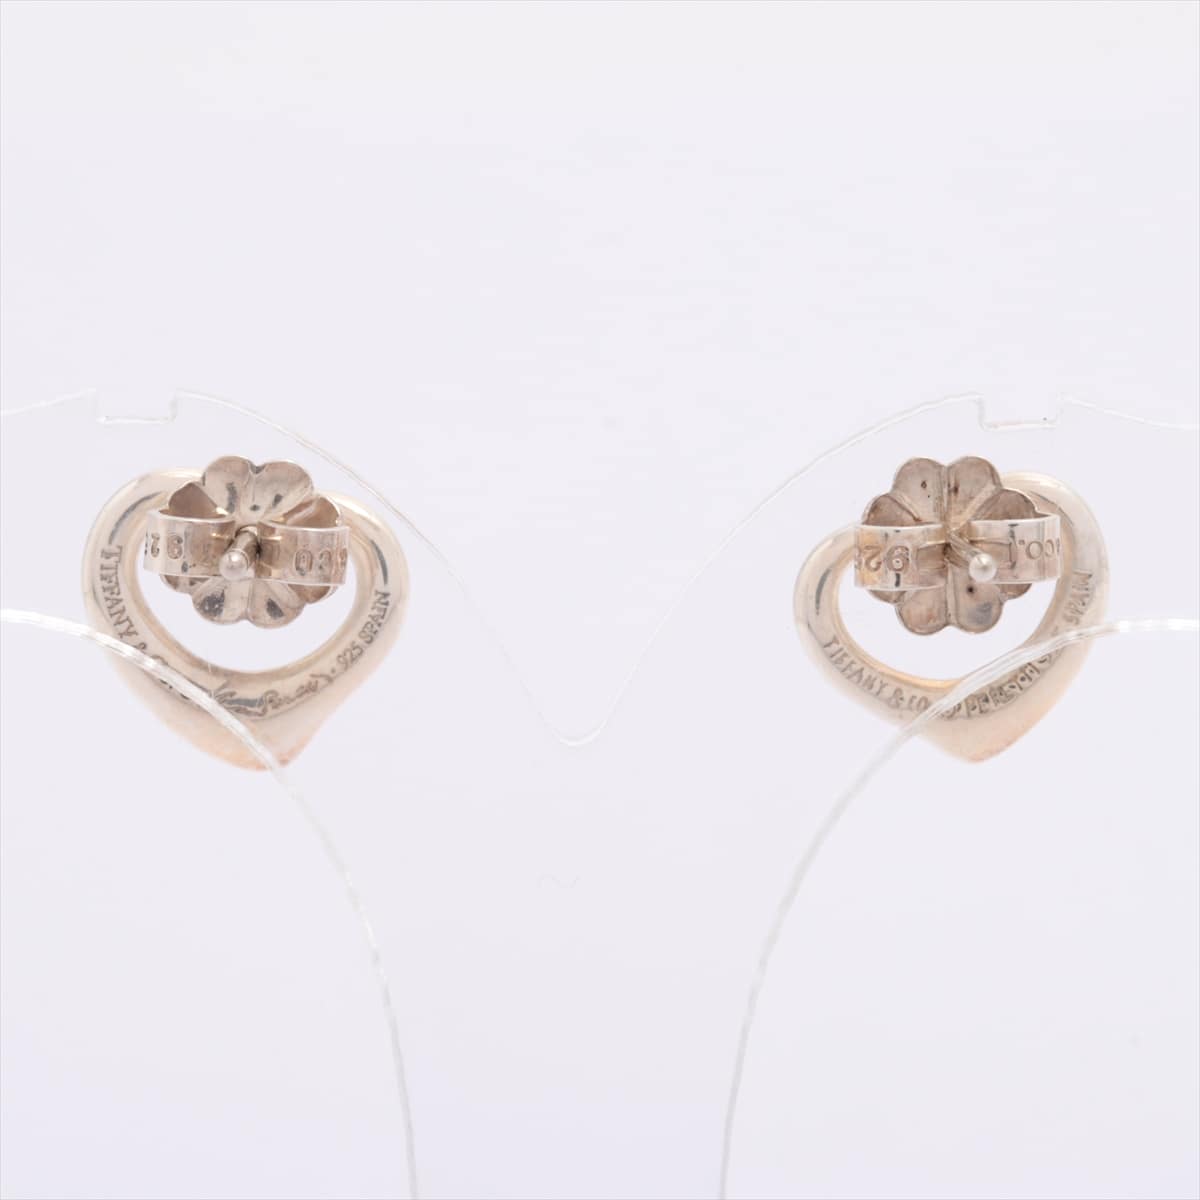 Tiffany Open Heart Piercing jewelry 925 Silver